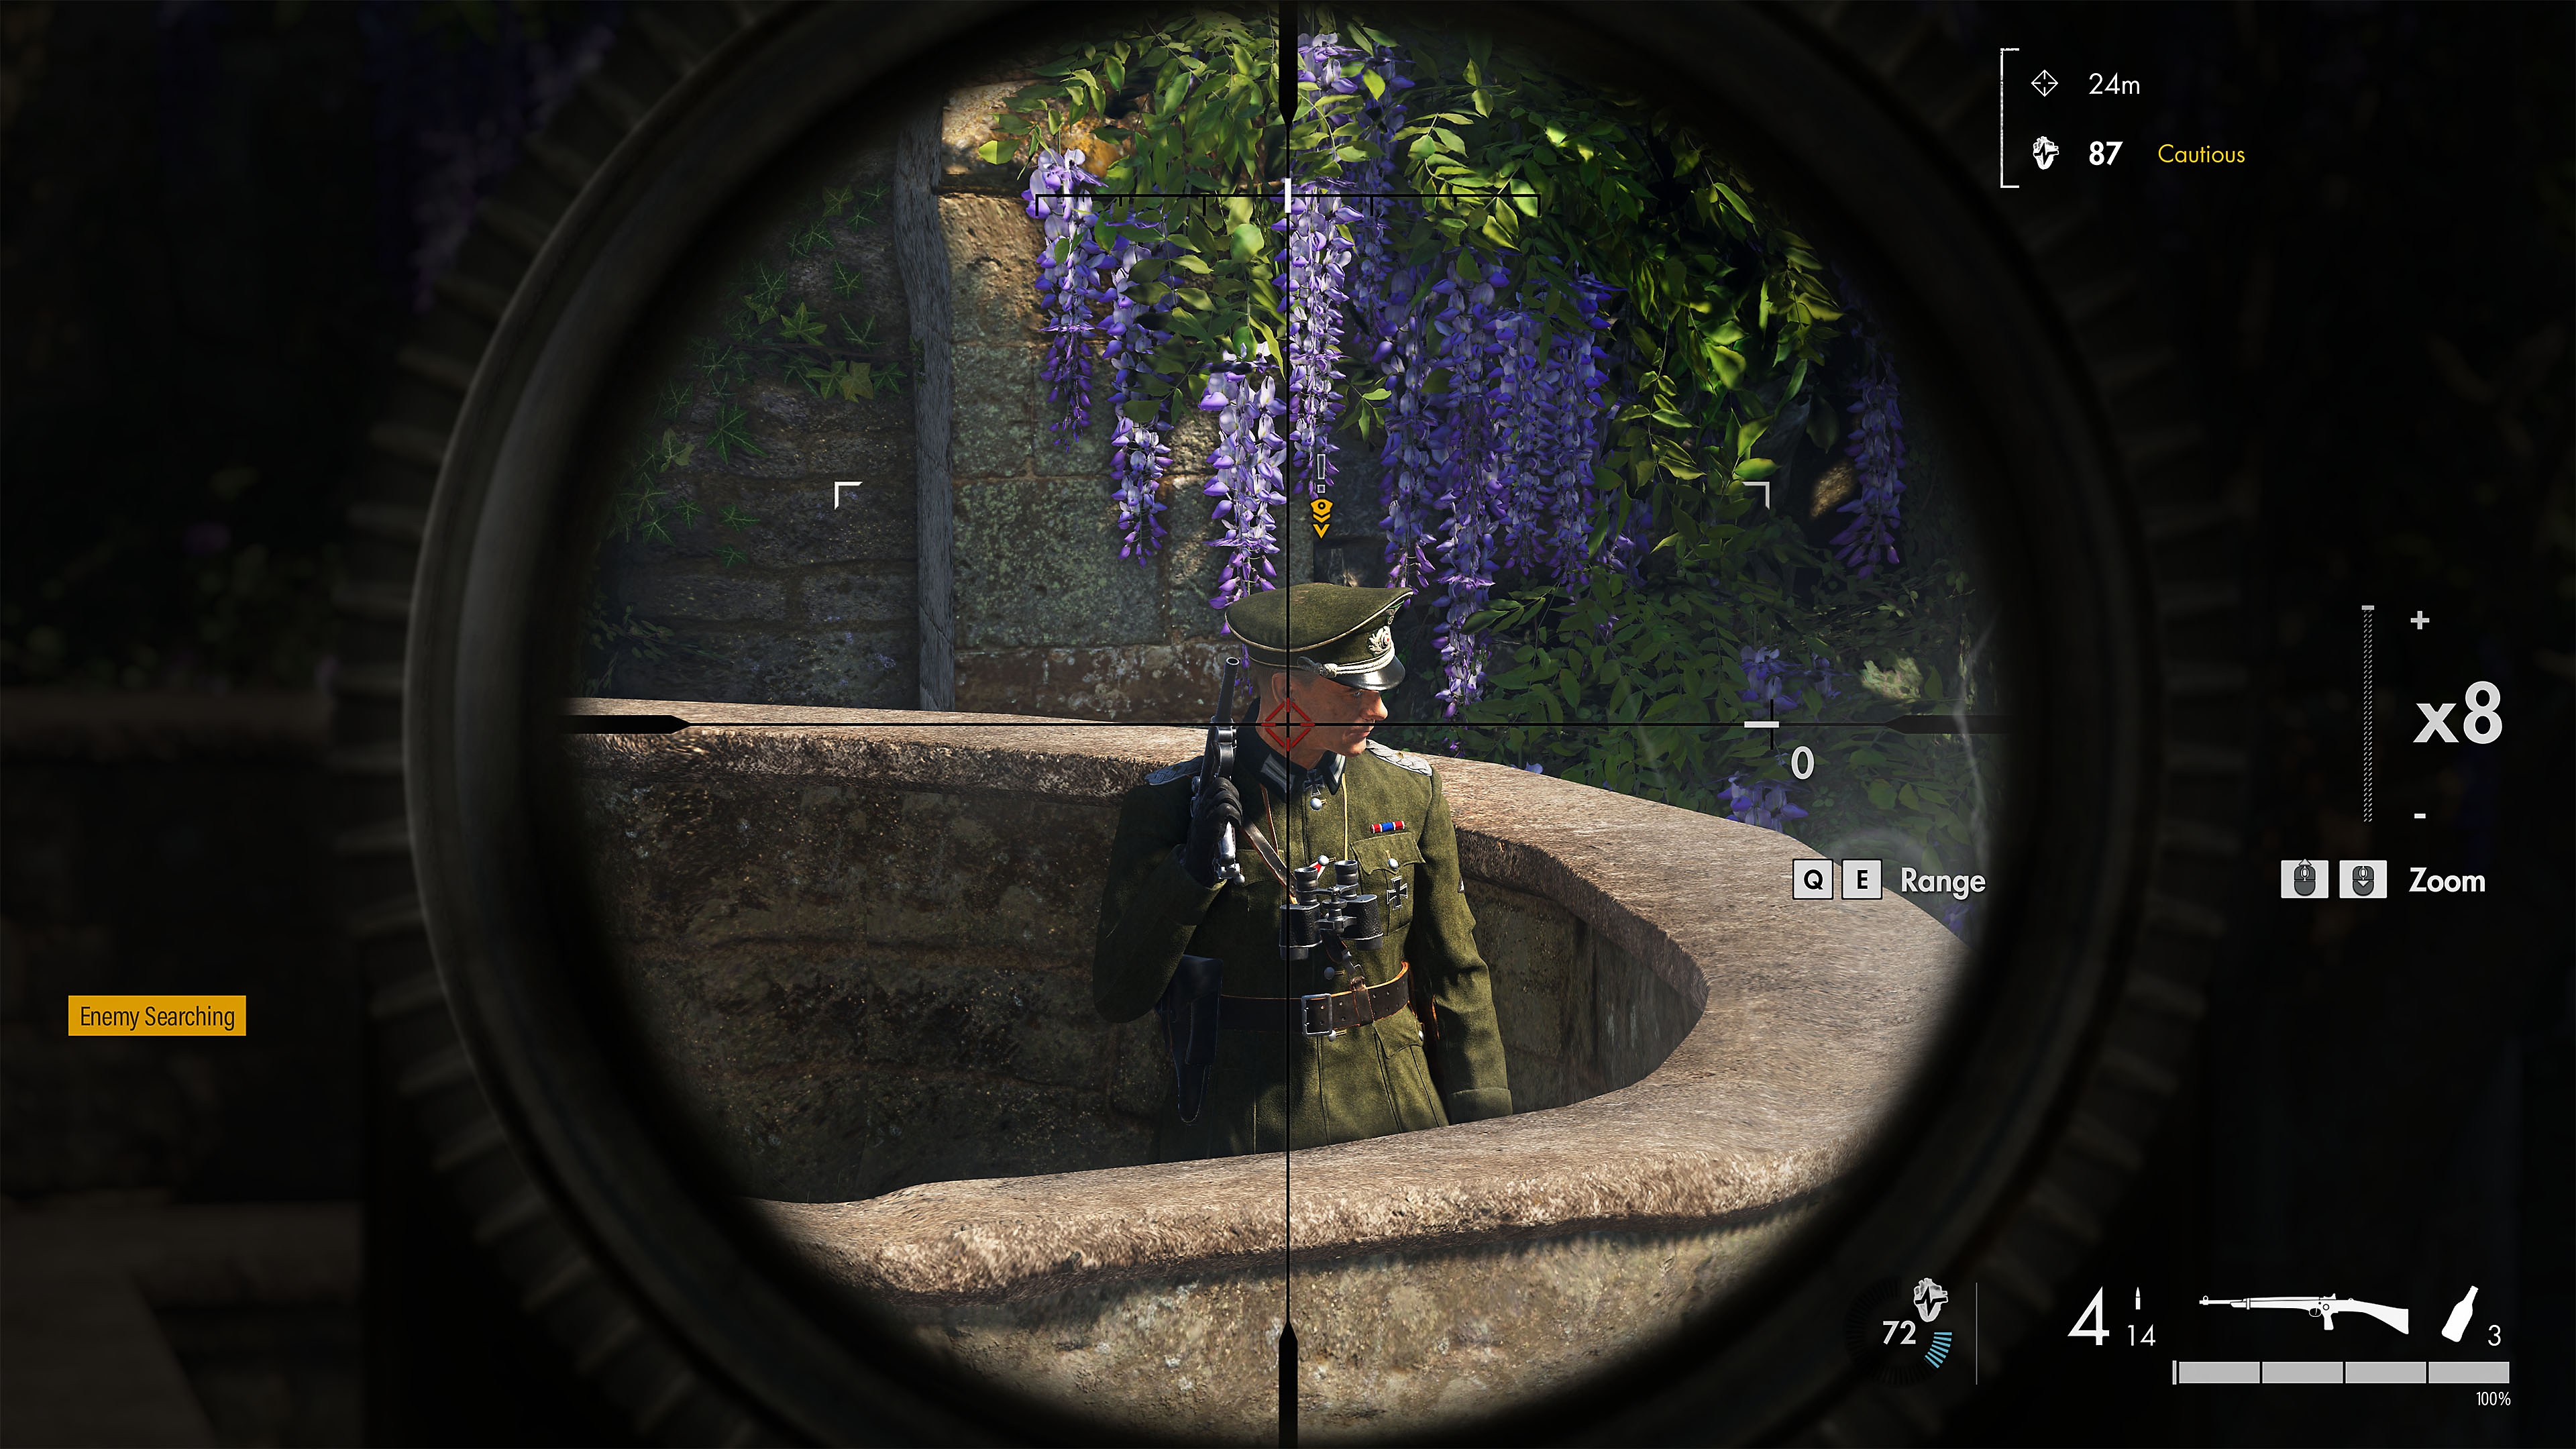 『Sniper Elite 5』 スナイパースコープの照準に合わさった敵のスクリーンショット